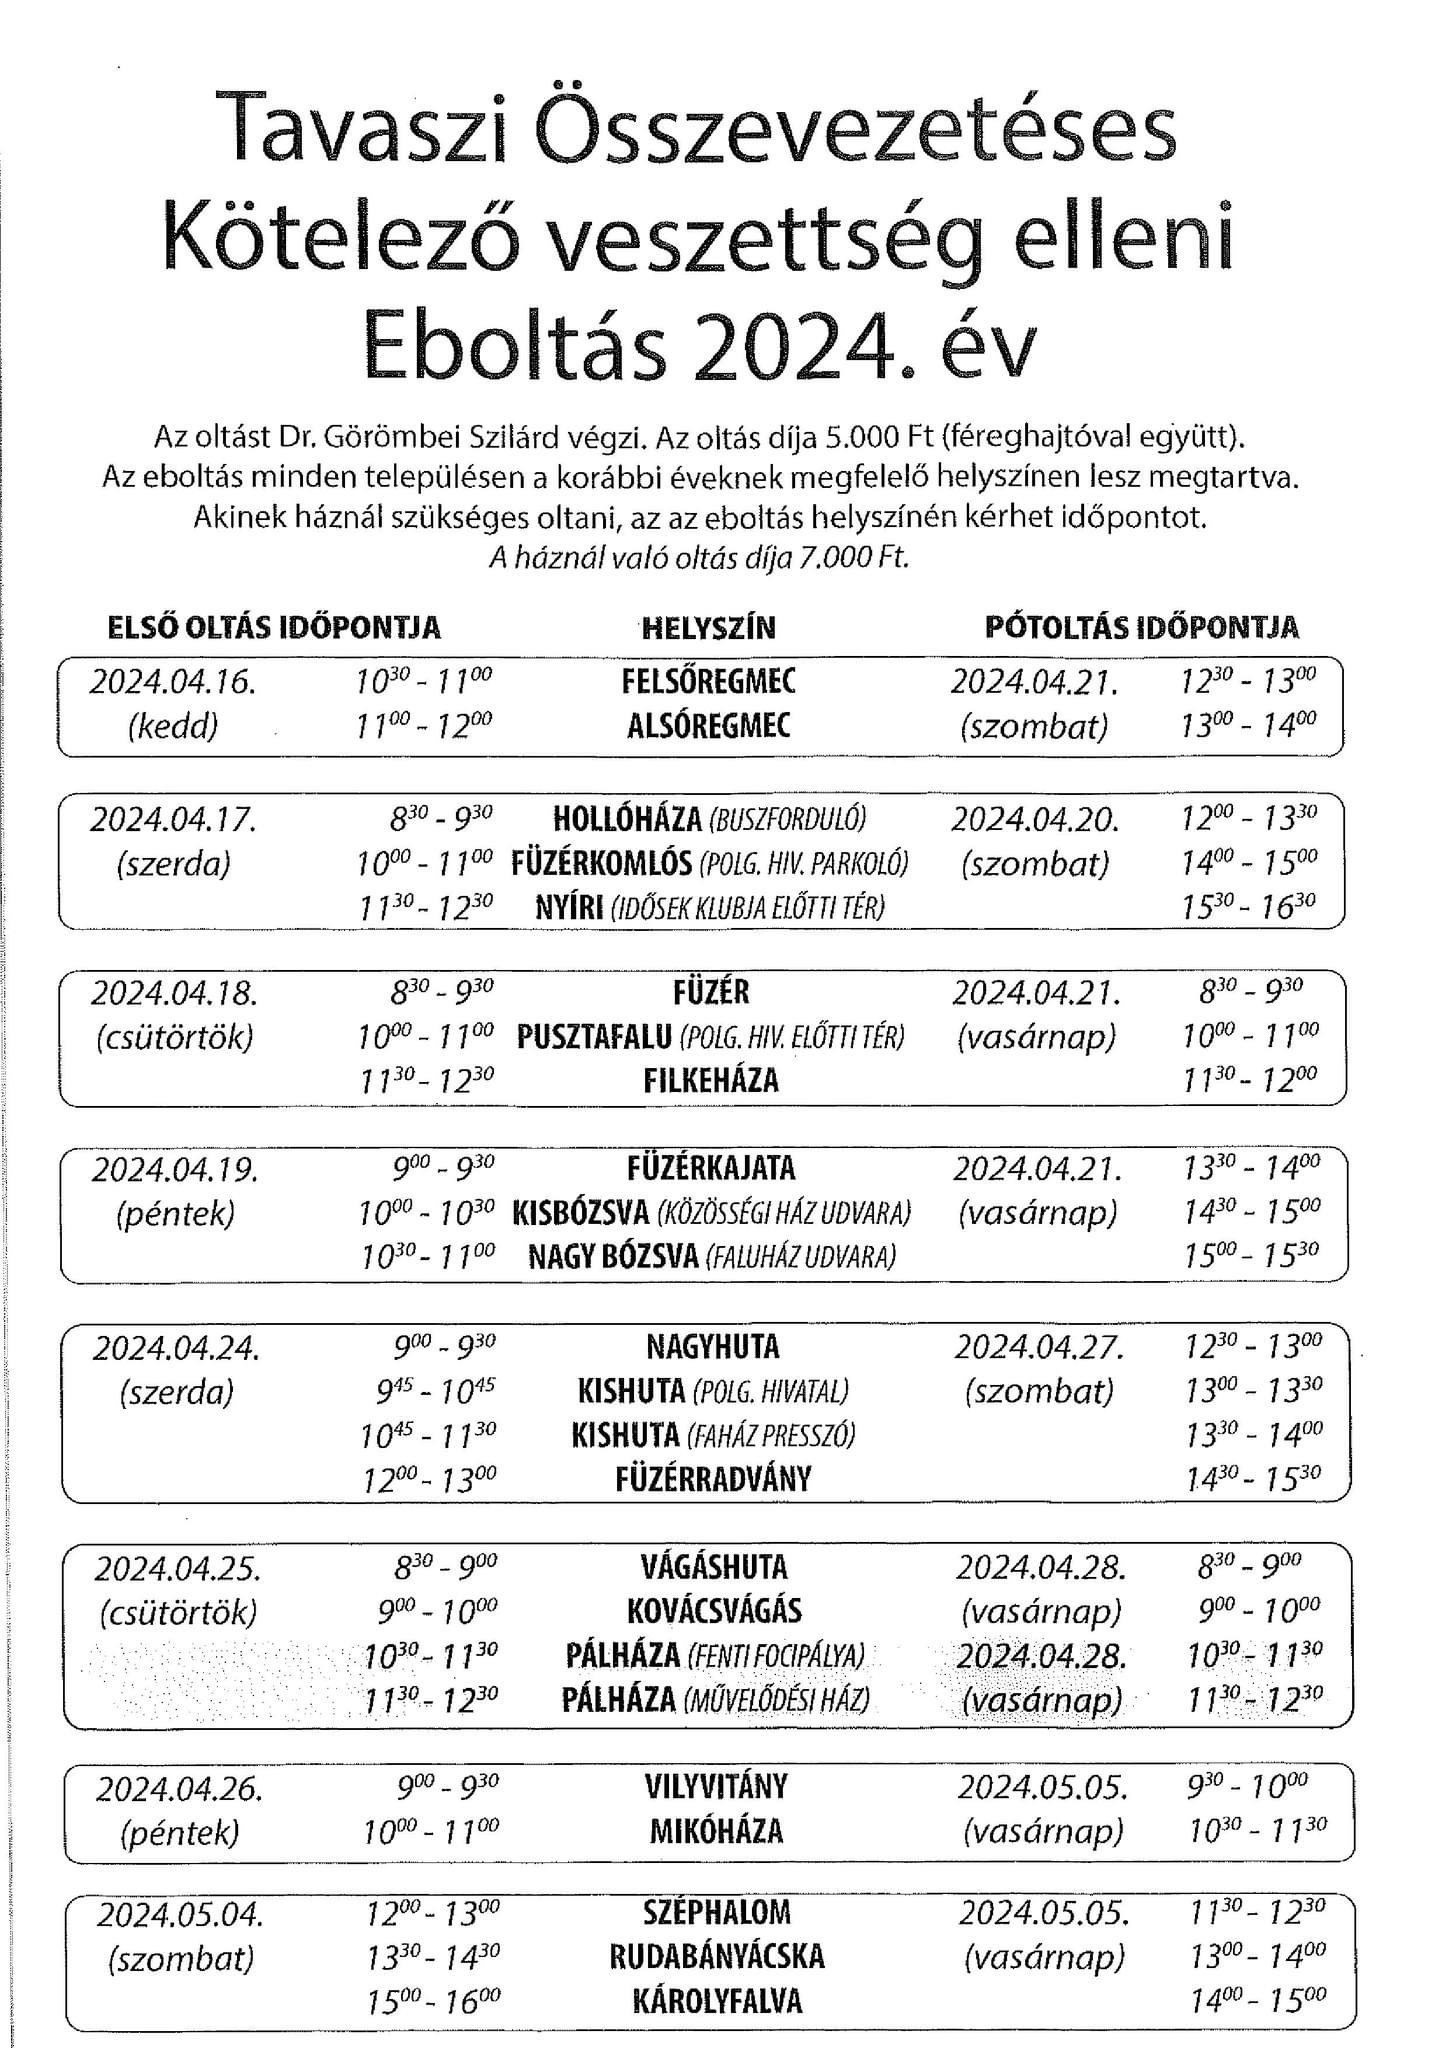 Eboltas 2024